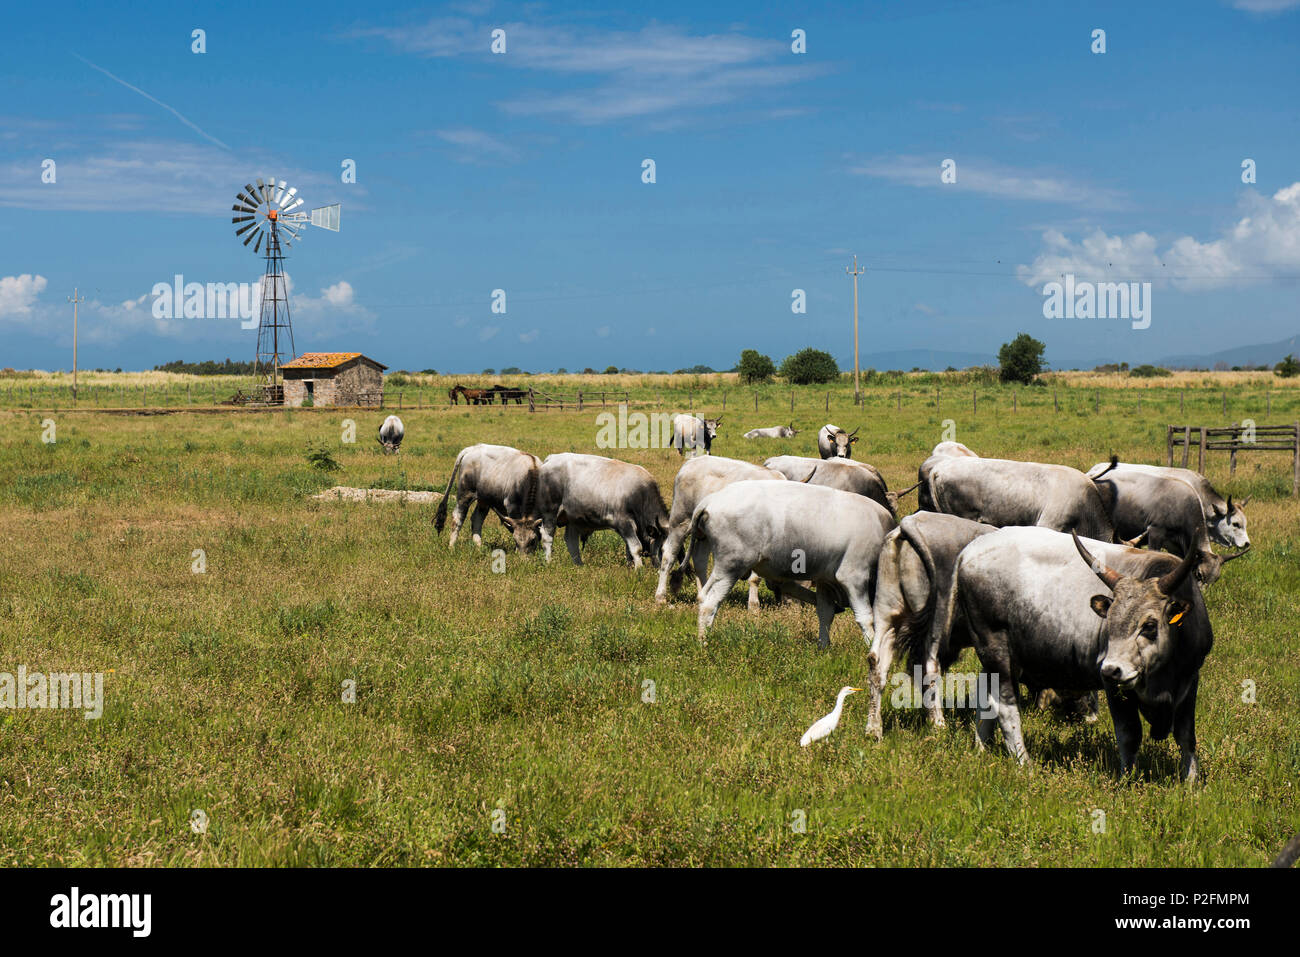 Cows grazing in a field, Parco Naturale della Maremma, Tuscany, Italy Stock Photo